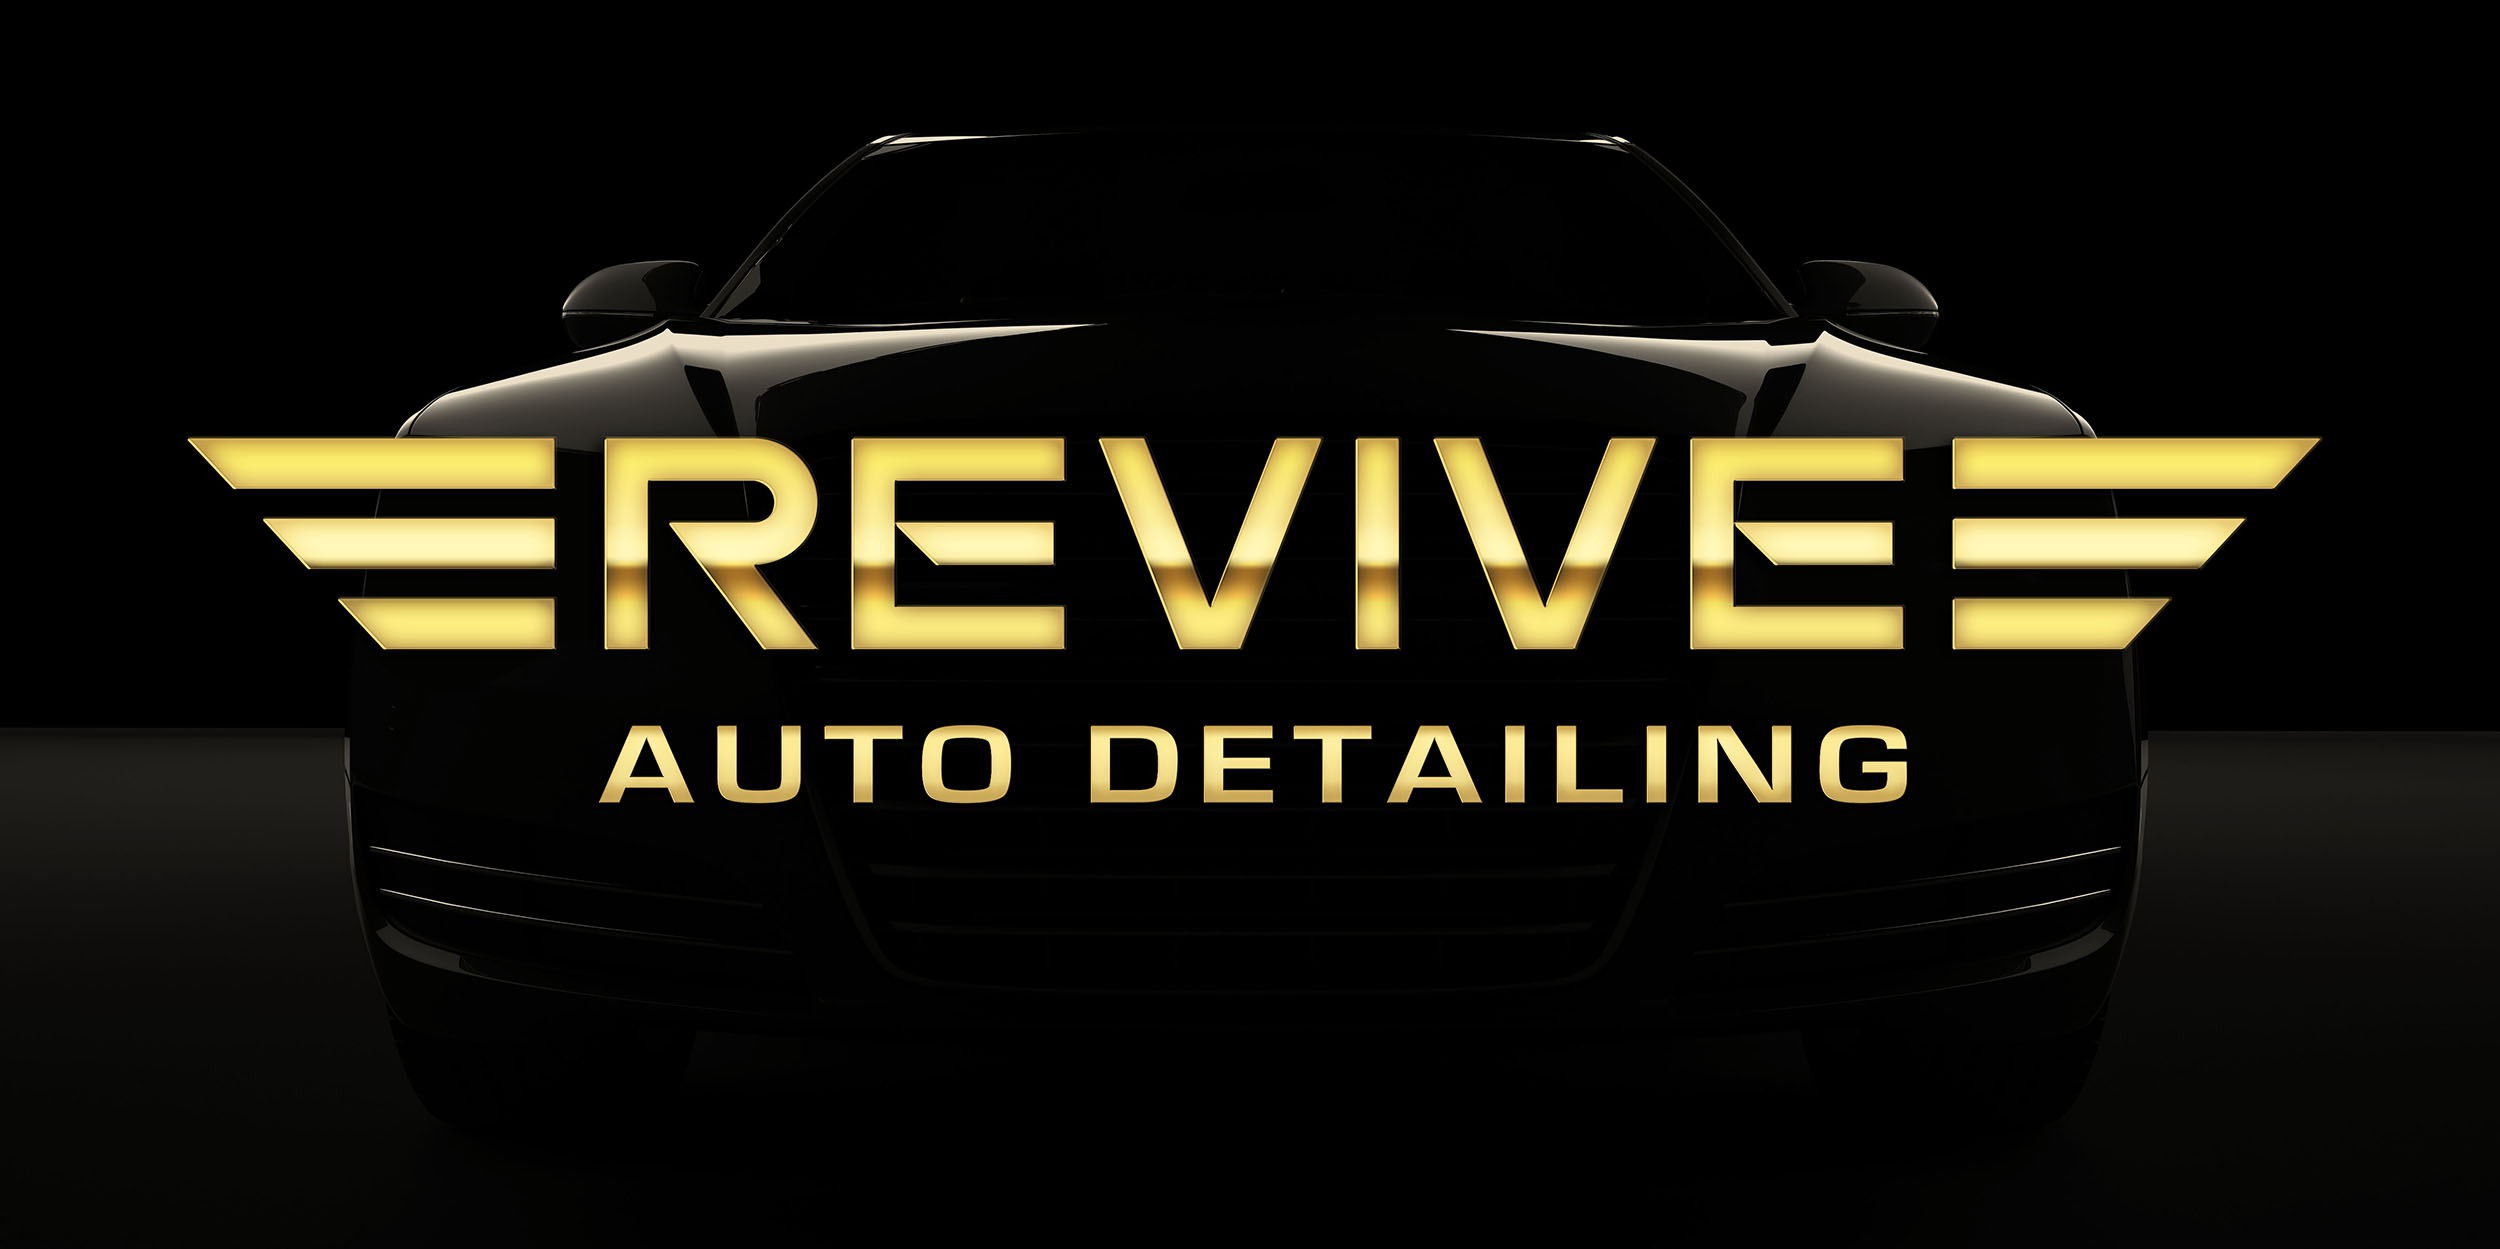 Revive Auto Detailing & Paint Correction, LLC